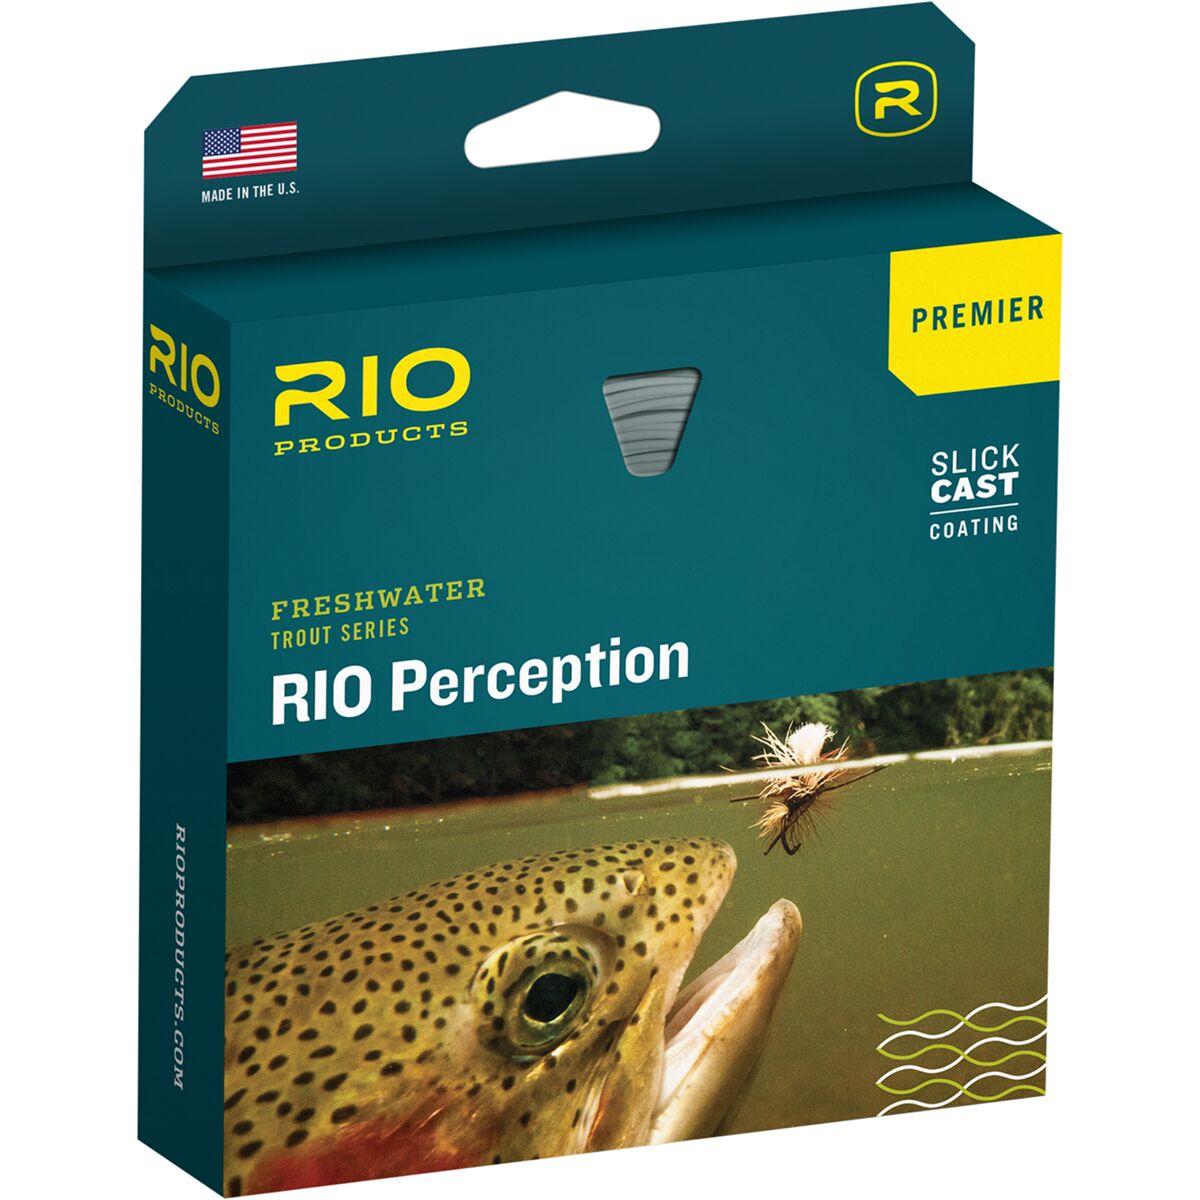 https://www.backcountry.com/images/items/1200/RIO/RIOA05T/ONECOL.jpg